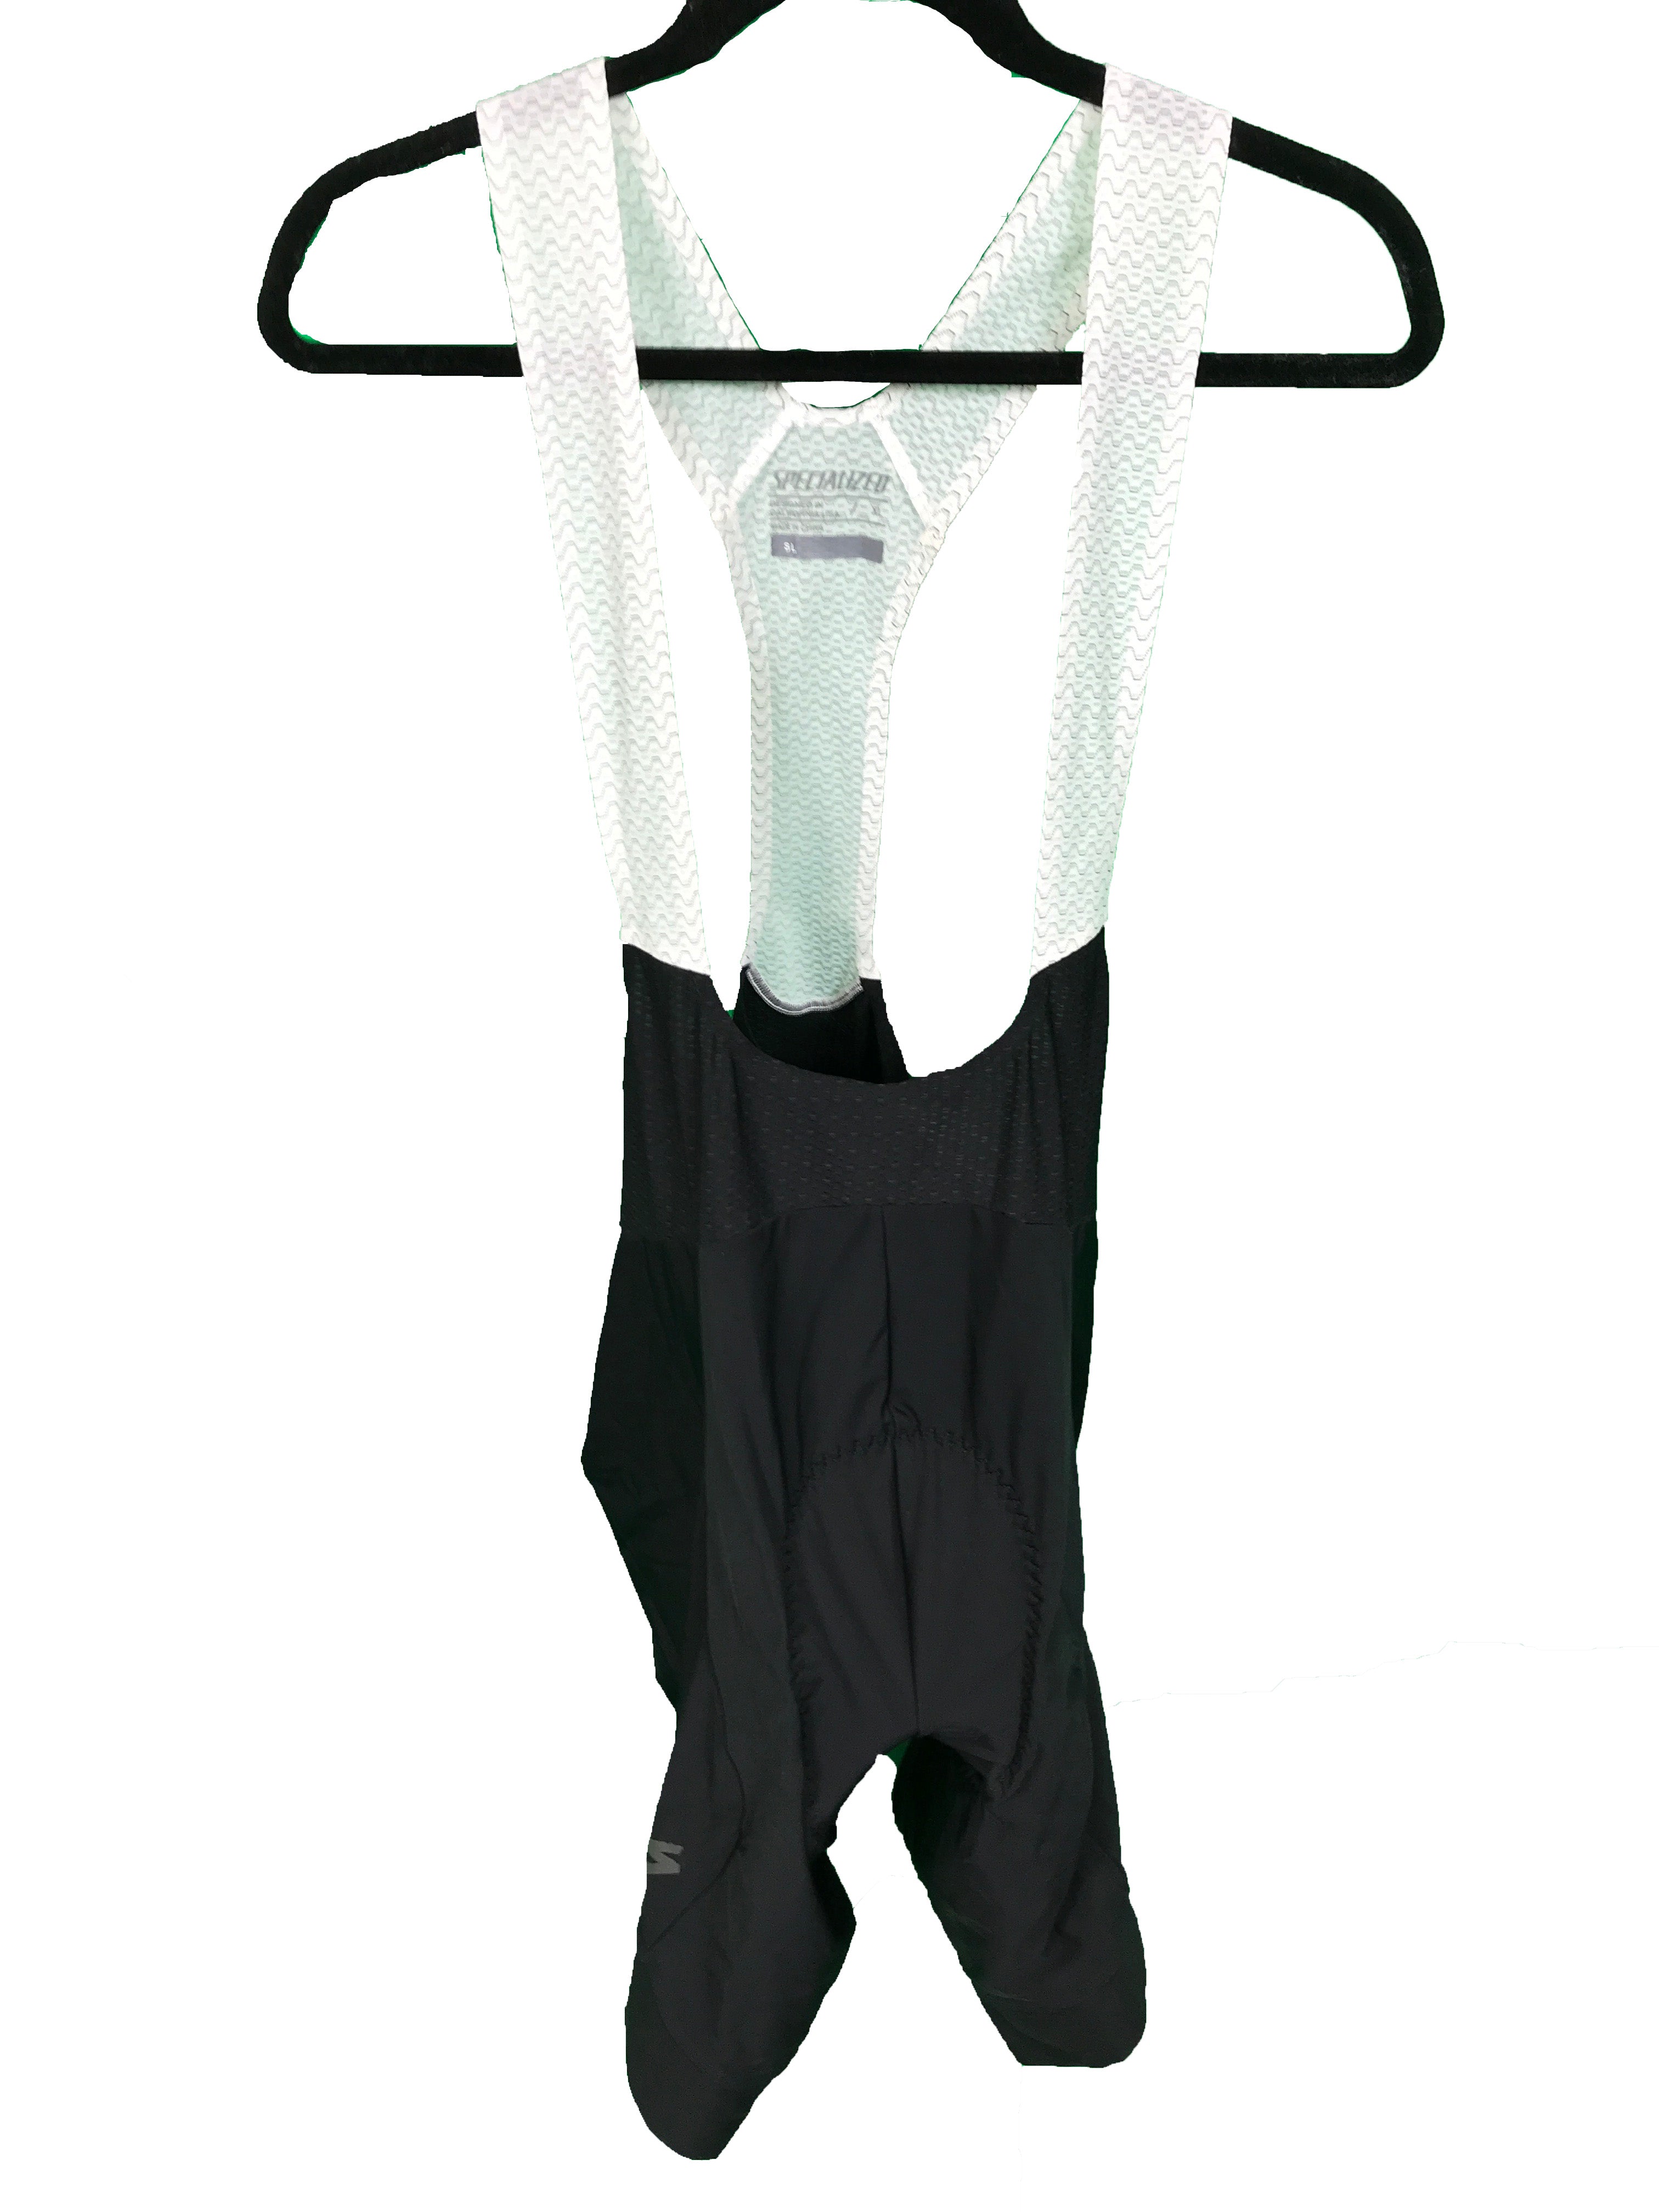 Specialized SL Bib Shorts with Chamois Men's Size XL NWT